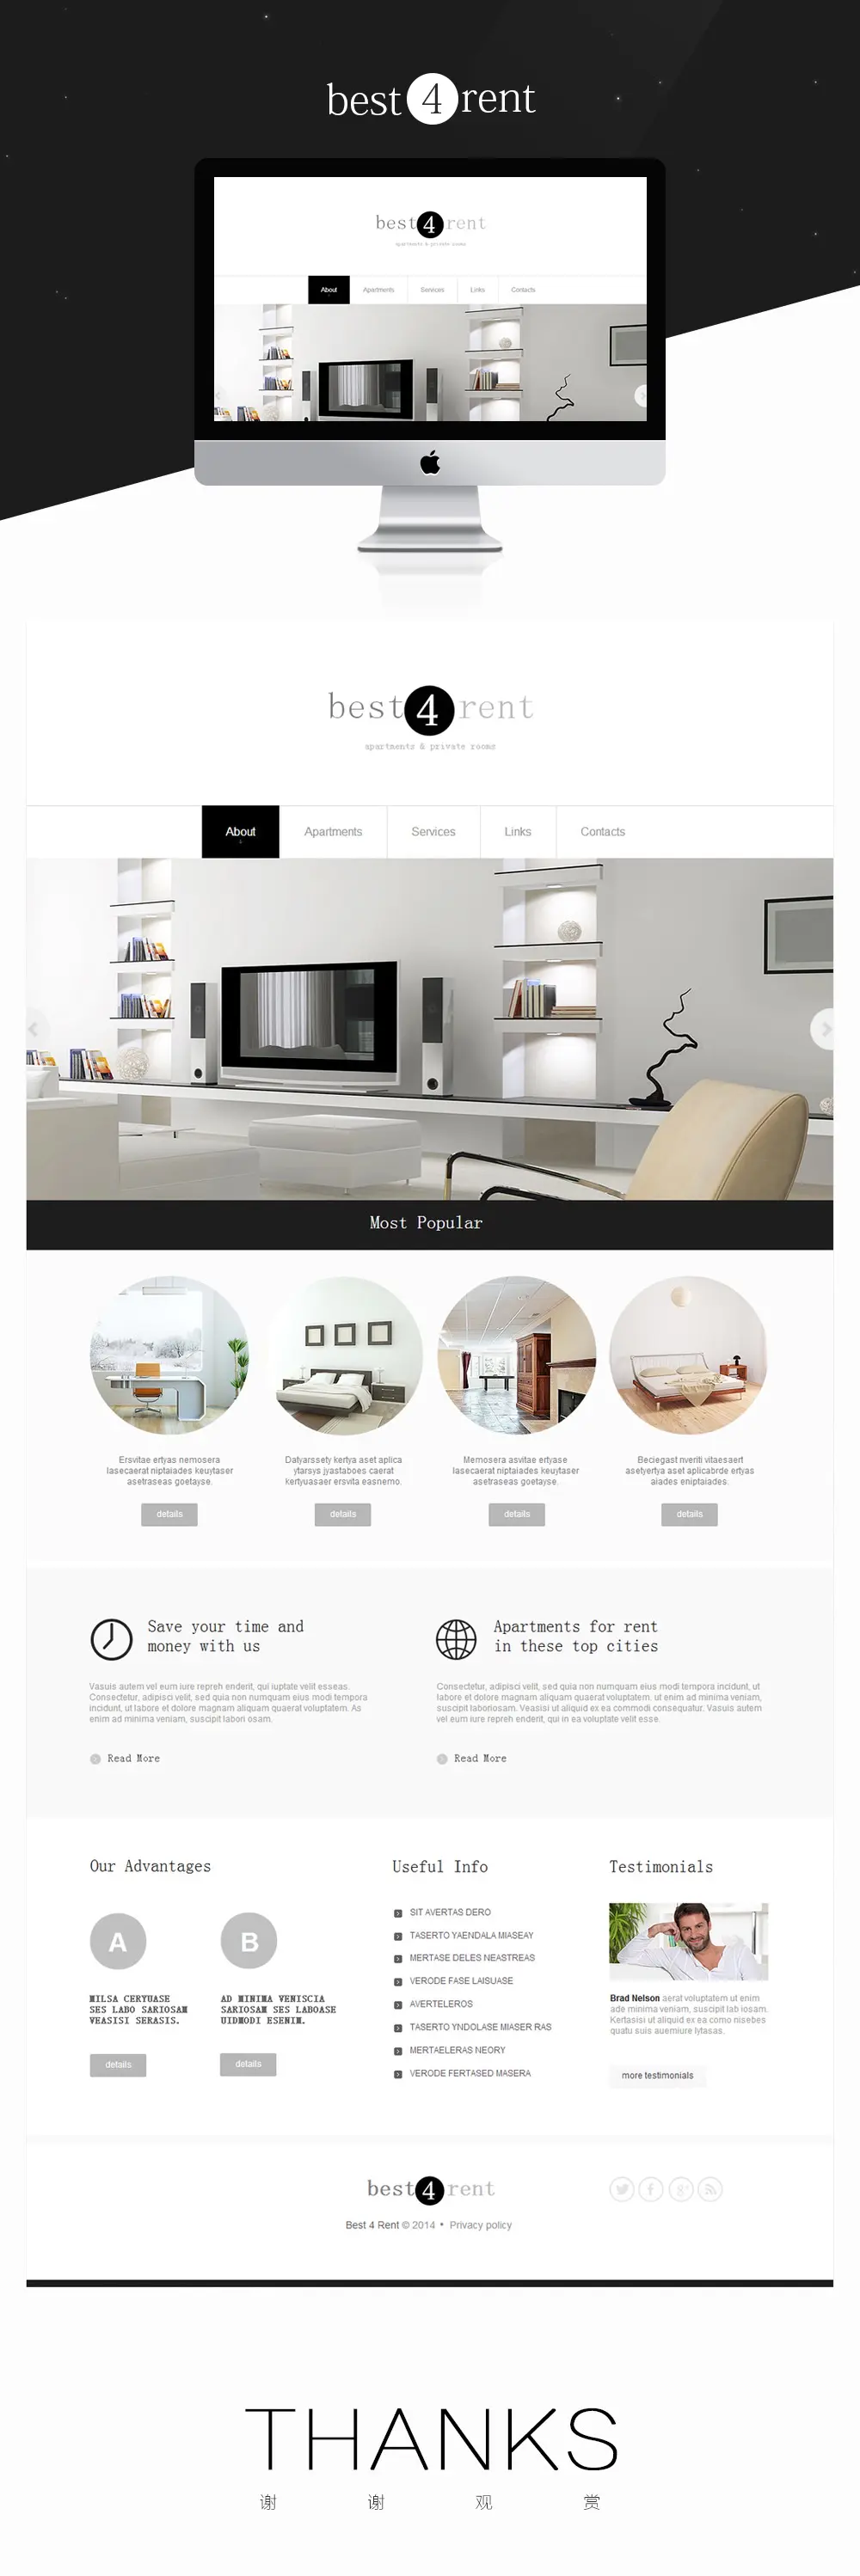 企业网站UI设计 best rent 佰上设计